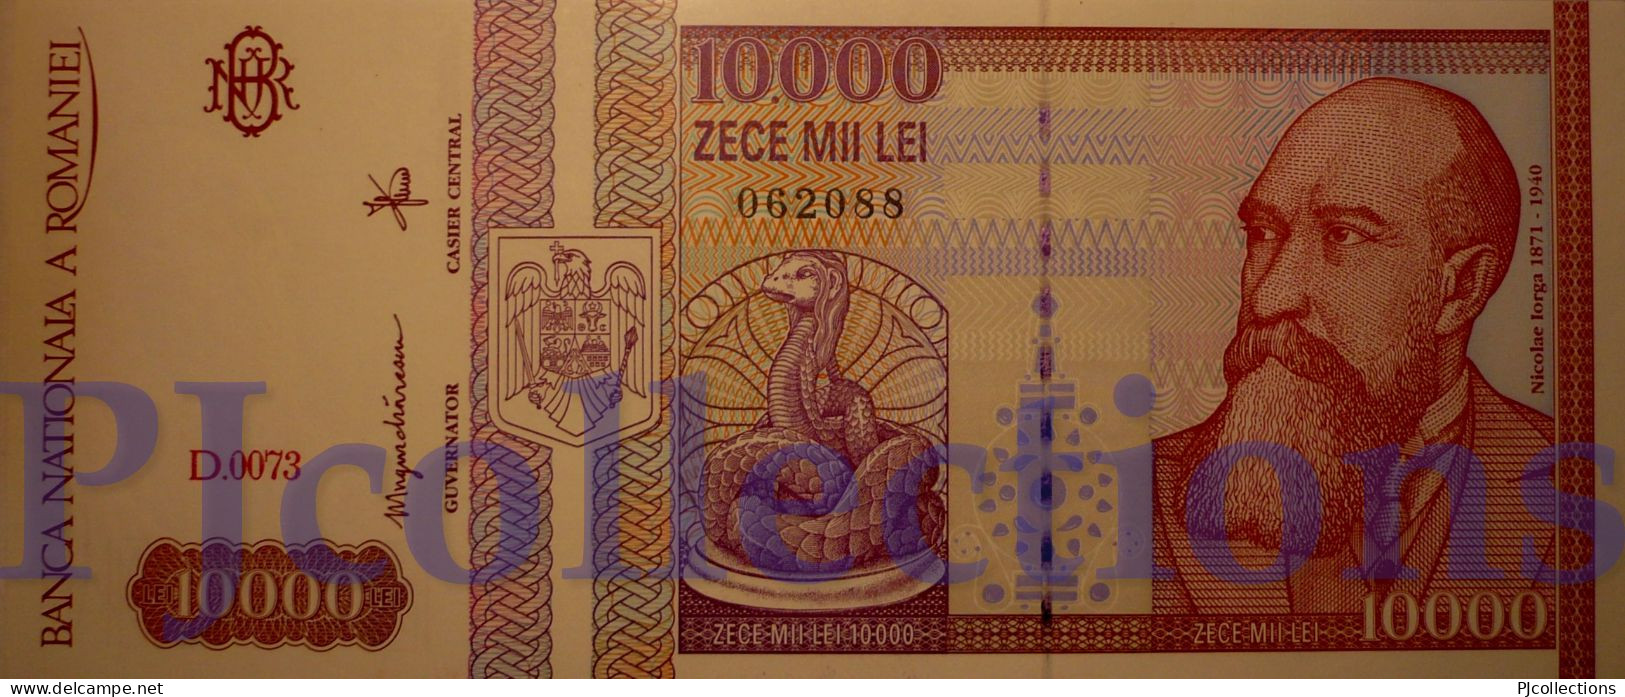 ROMANIA 10000 LEI 1994 PICK 105 UNC - Rumania